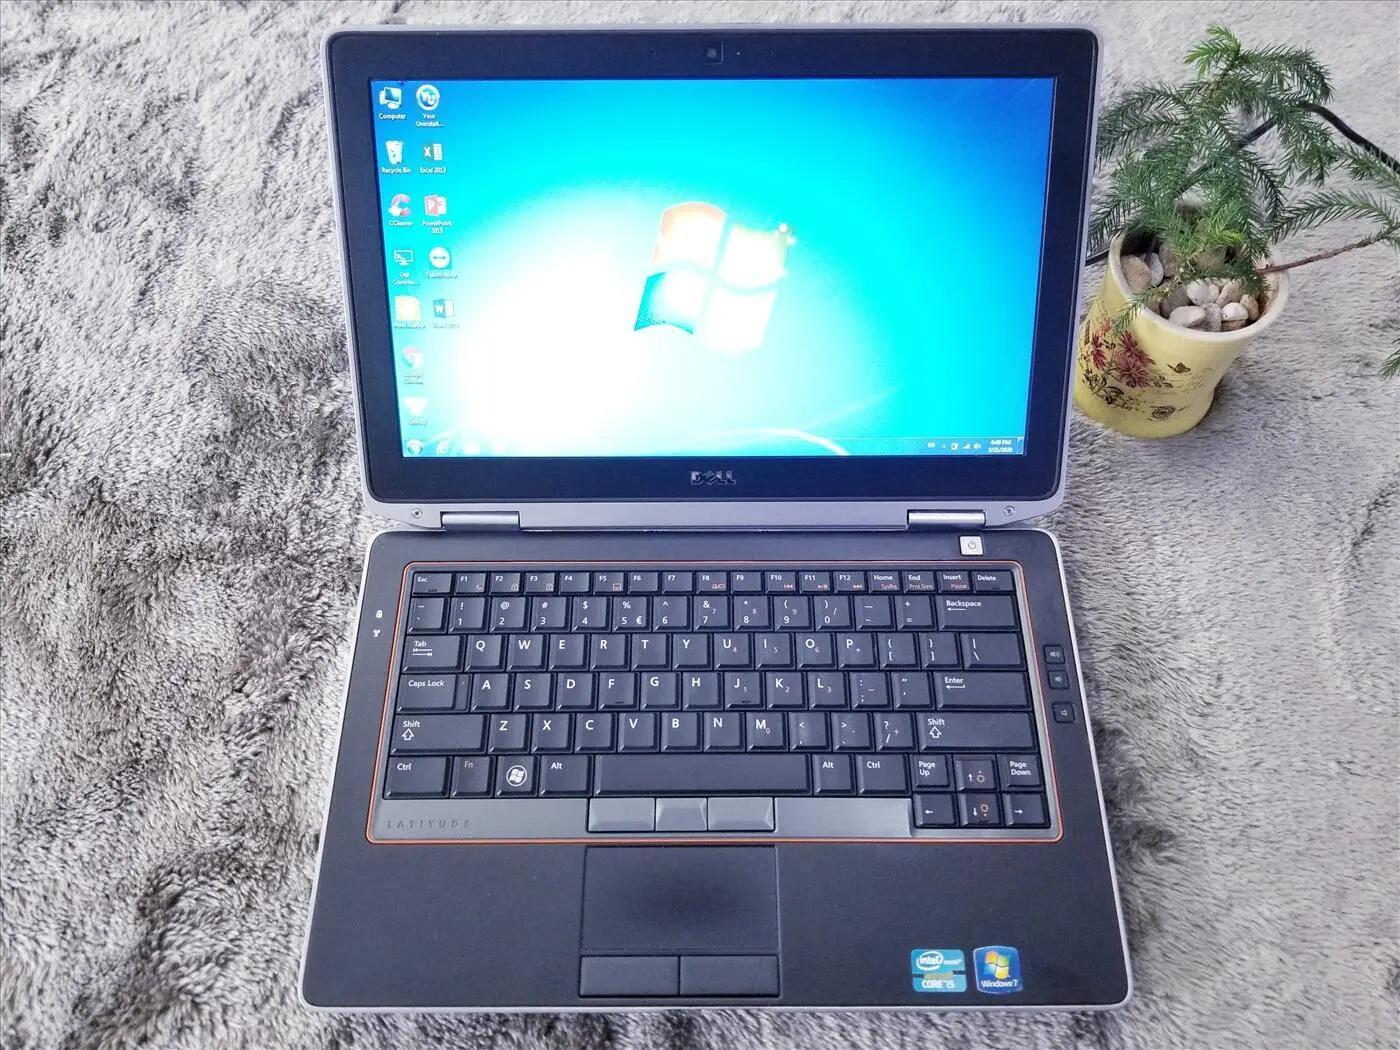 Laptop Dell Latitude E6320 - Intel Core i5-2520M 2.5GHz, 4GB RAM, 320GB HDD, Intel HD Graphics 3000, 13.3 inch